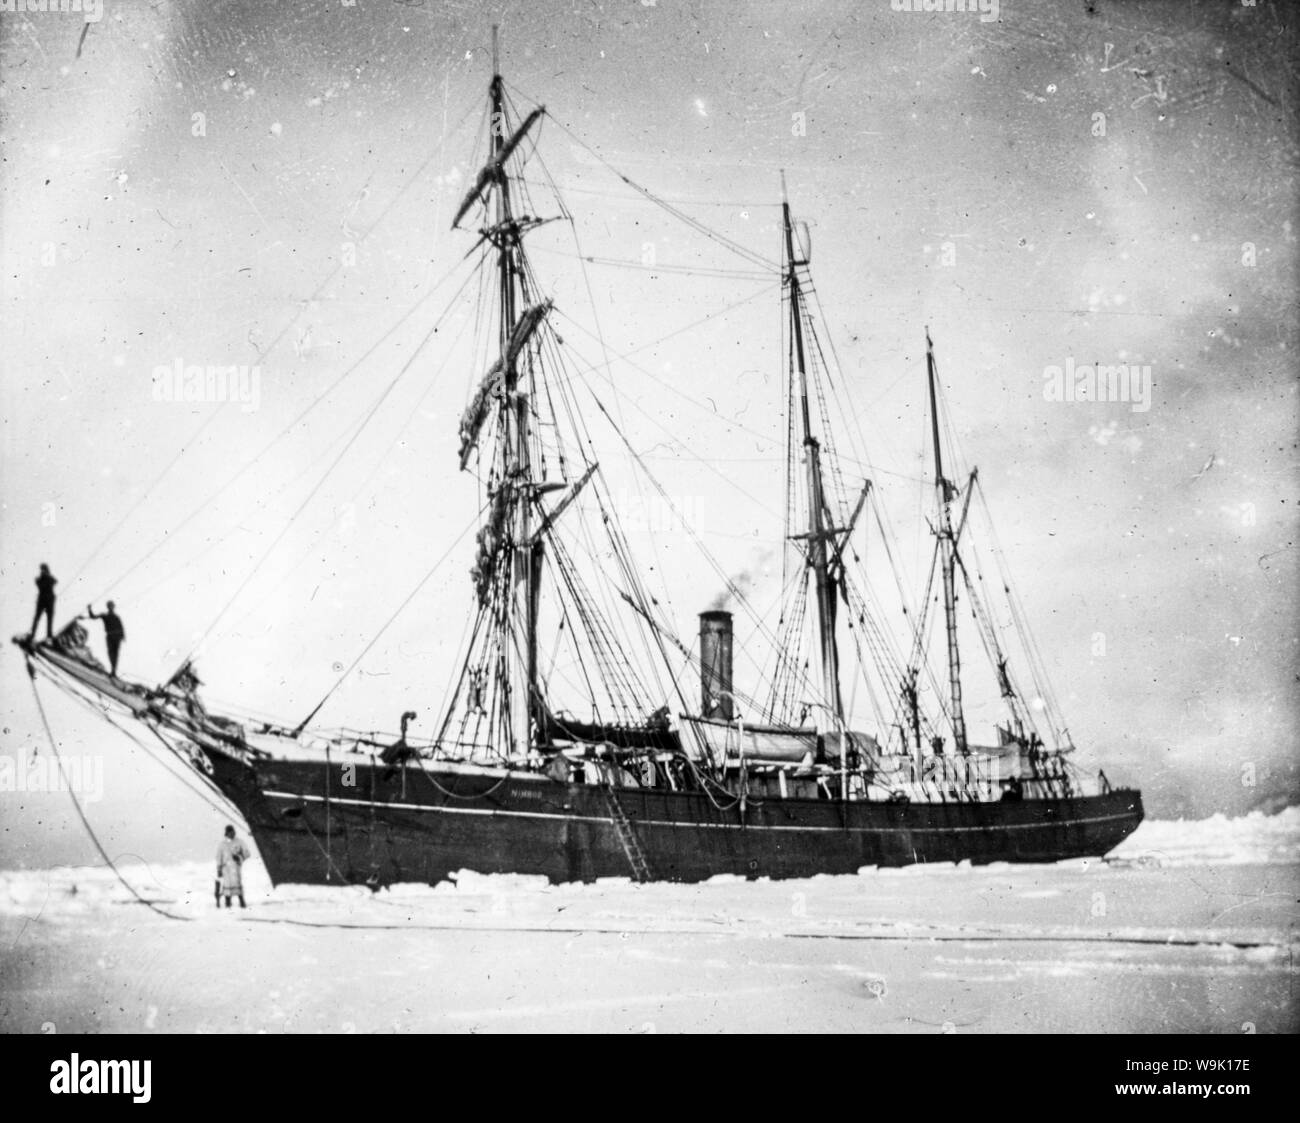 El barco de Ernest Shackleton Nimrod se mantuvo en el hielo en la expedición Nimrod al Polo Sur en 1908-1909, fotografía Foto de stock